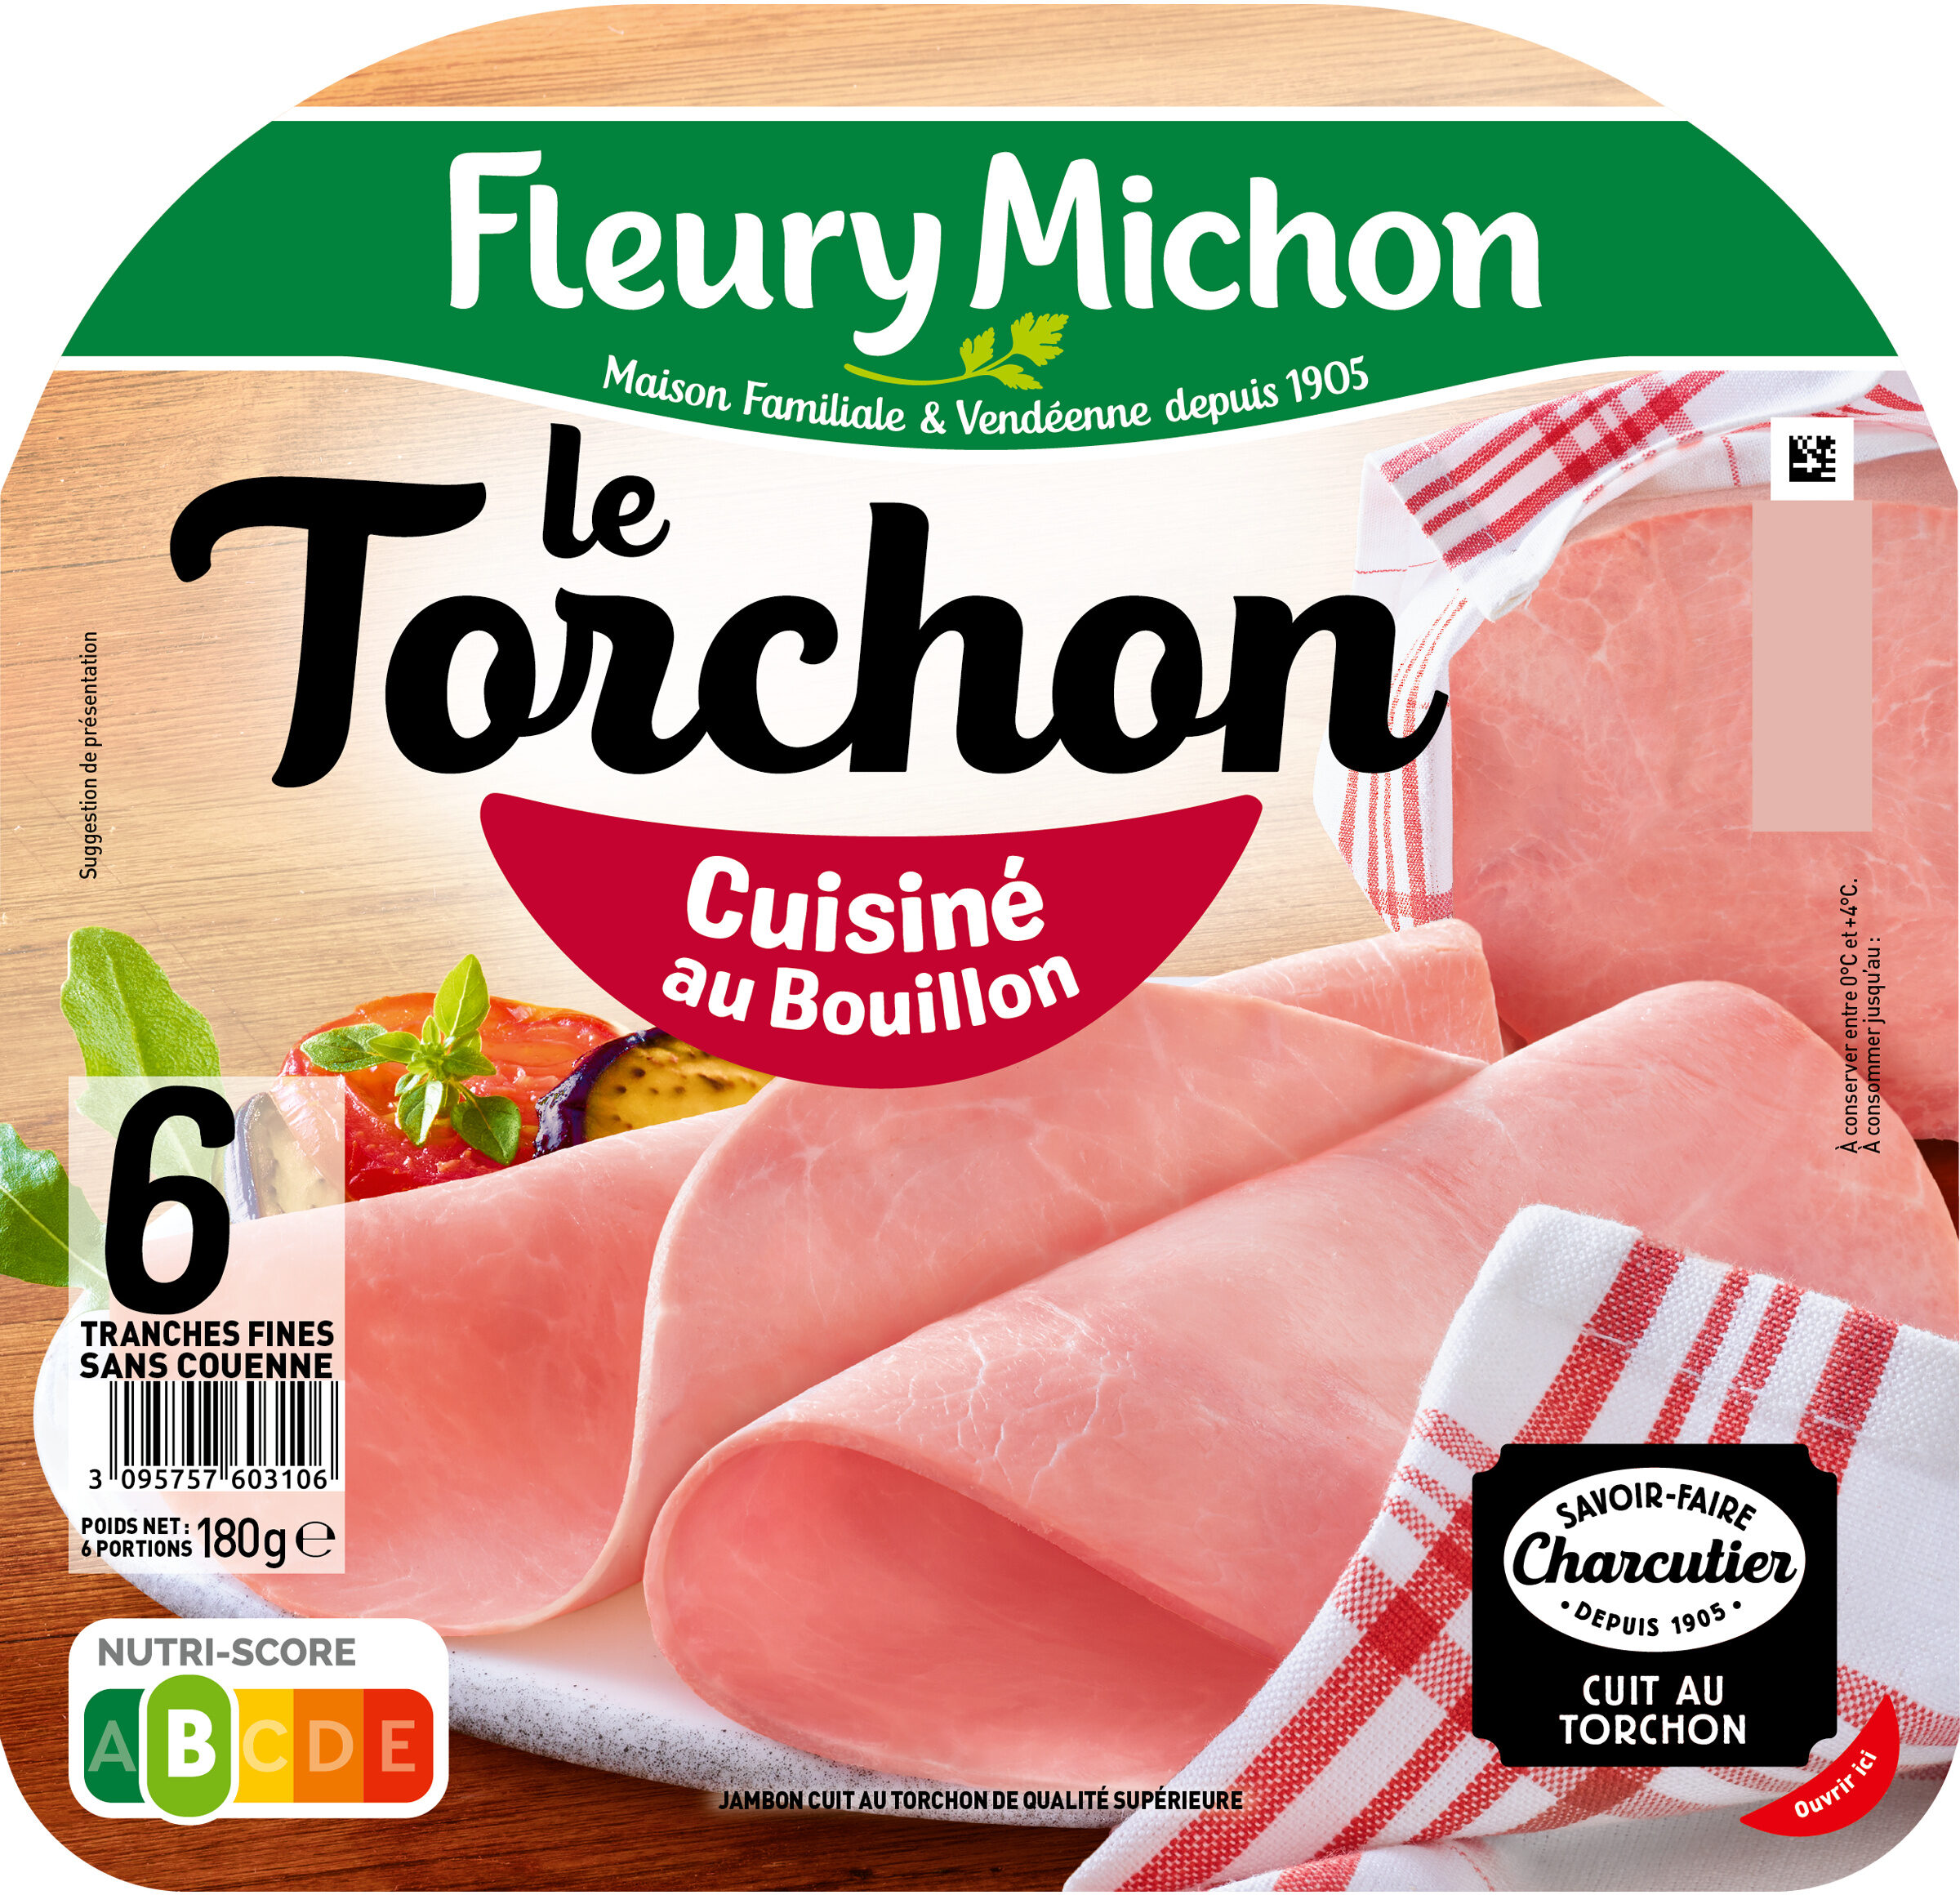 Le Torchon - Cuisiné au Bouillon - Product - fr